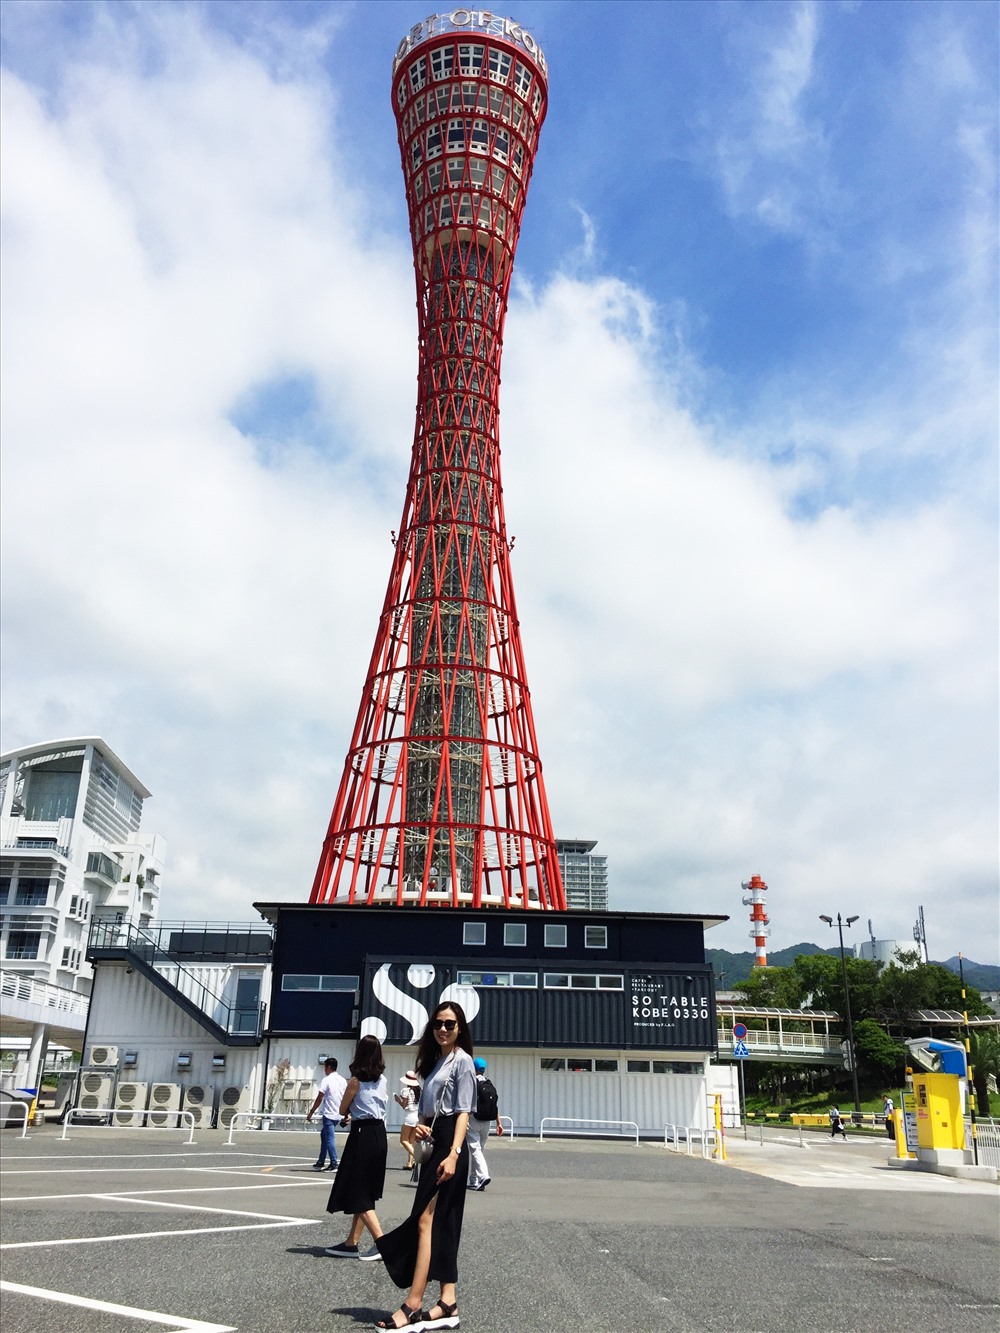 Ngoài ra, tại Cảng Kobe còn có Tháp Cảng Kobe, đây là tháp ngắm cảnh có cấu trúc dạng ống, có thiết kế rất độc đáo, hiếm có thể thấy trên thế giới. Với “cấu trúc Song Khúc Diện” hình cổ lọ, tựa như một trống của Nhật bản. Vì nét đặc trưng đó, nên nó được gọi tên là “Tòa tháp mỹ nữ” - mang nét đẹp mềm mại của một người con gái và trở thành biểu tượng của thành phố Kobe. Ảnh: Linh Gooner